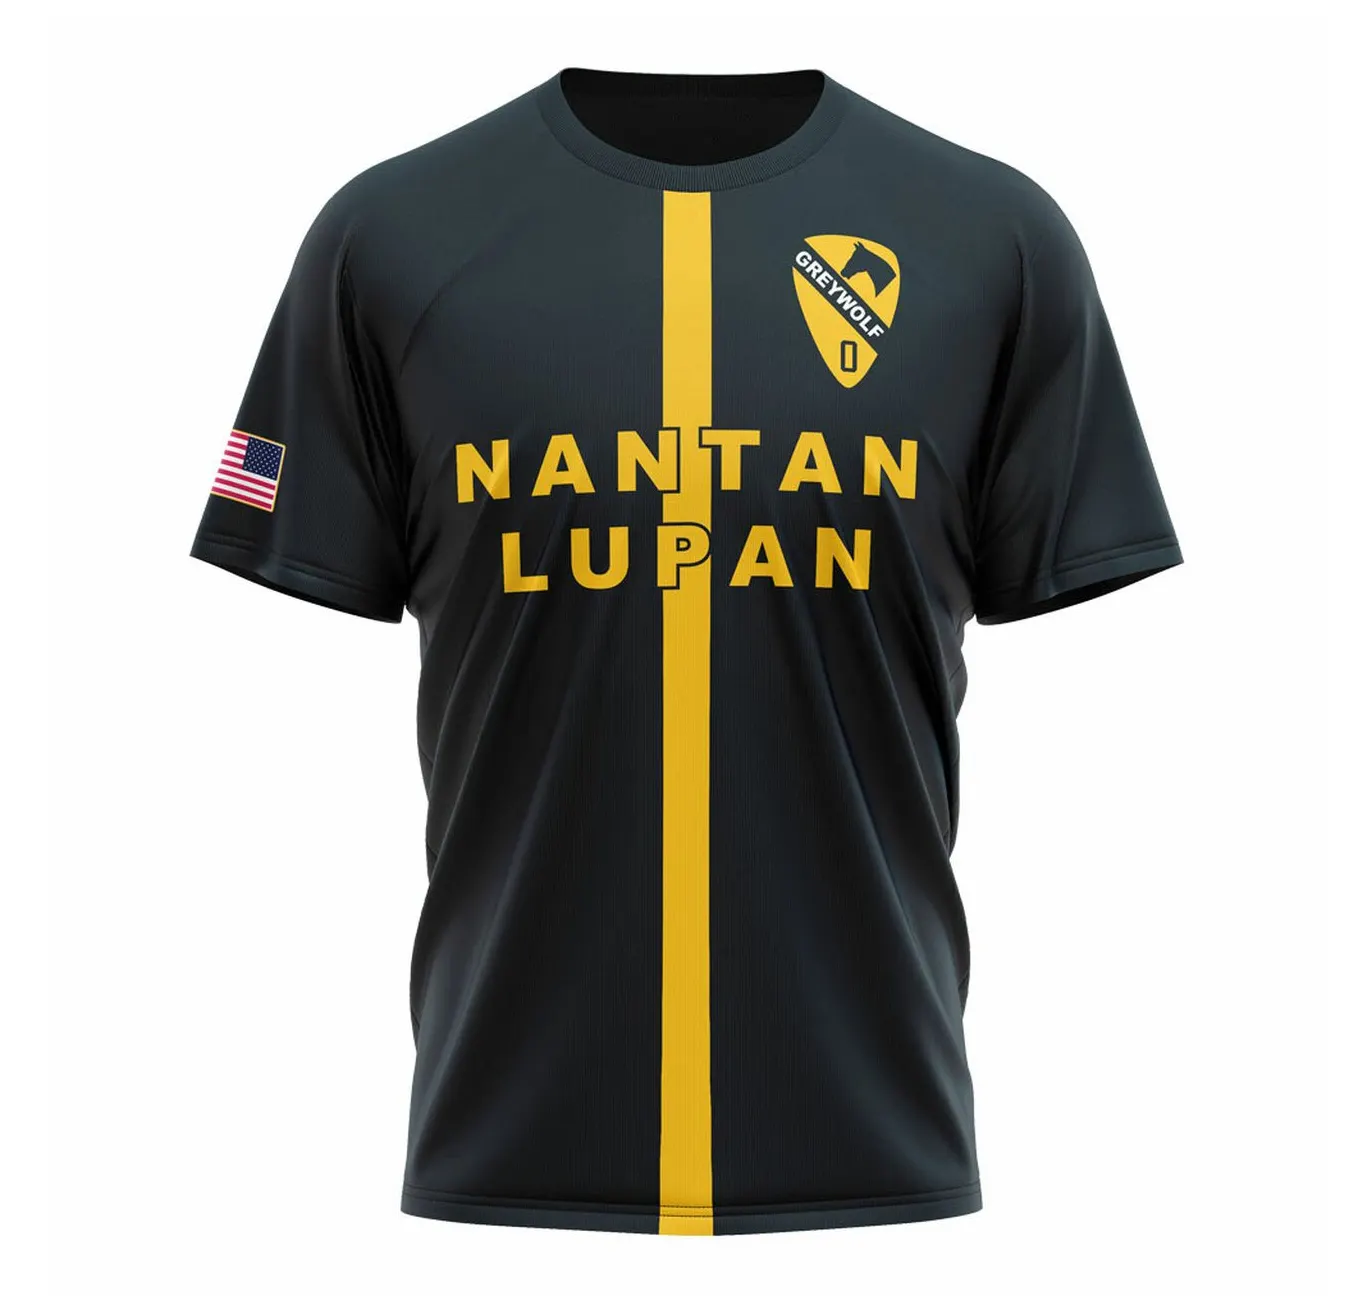 Unisex Team Sublimation Sports Soccer Wear magliette uniforme maglia da calcio di alta qualità distintivo abbigliamento da calcio calcio